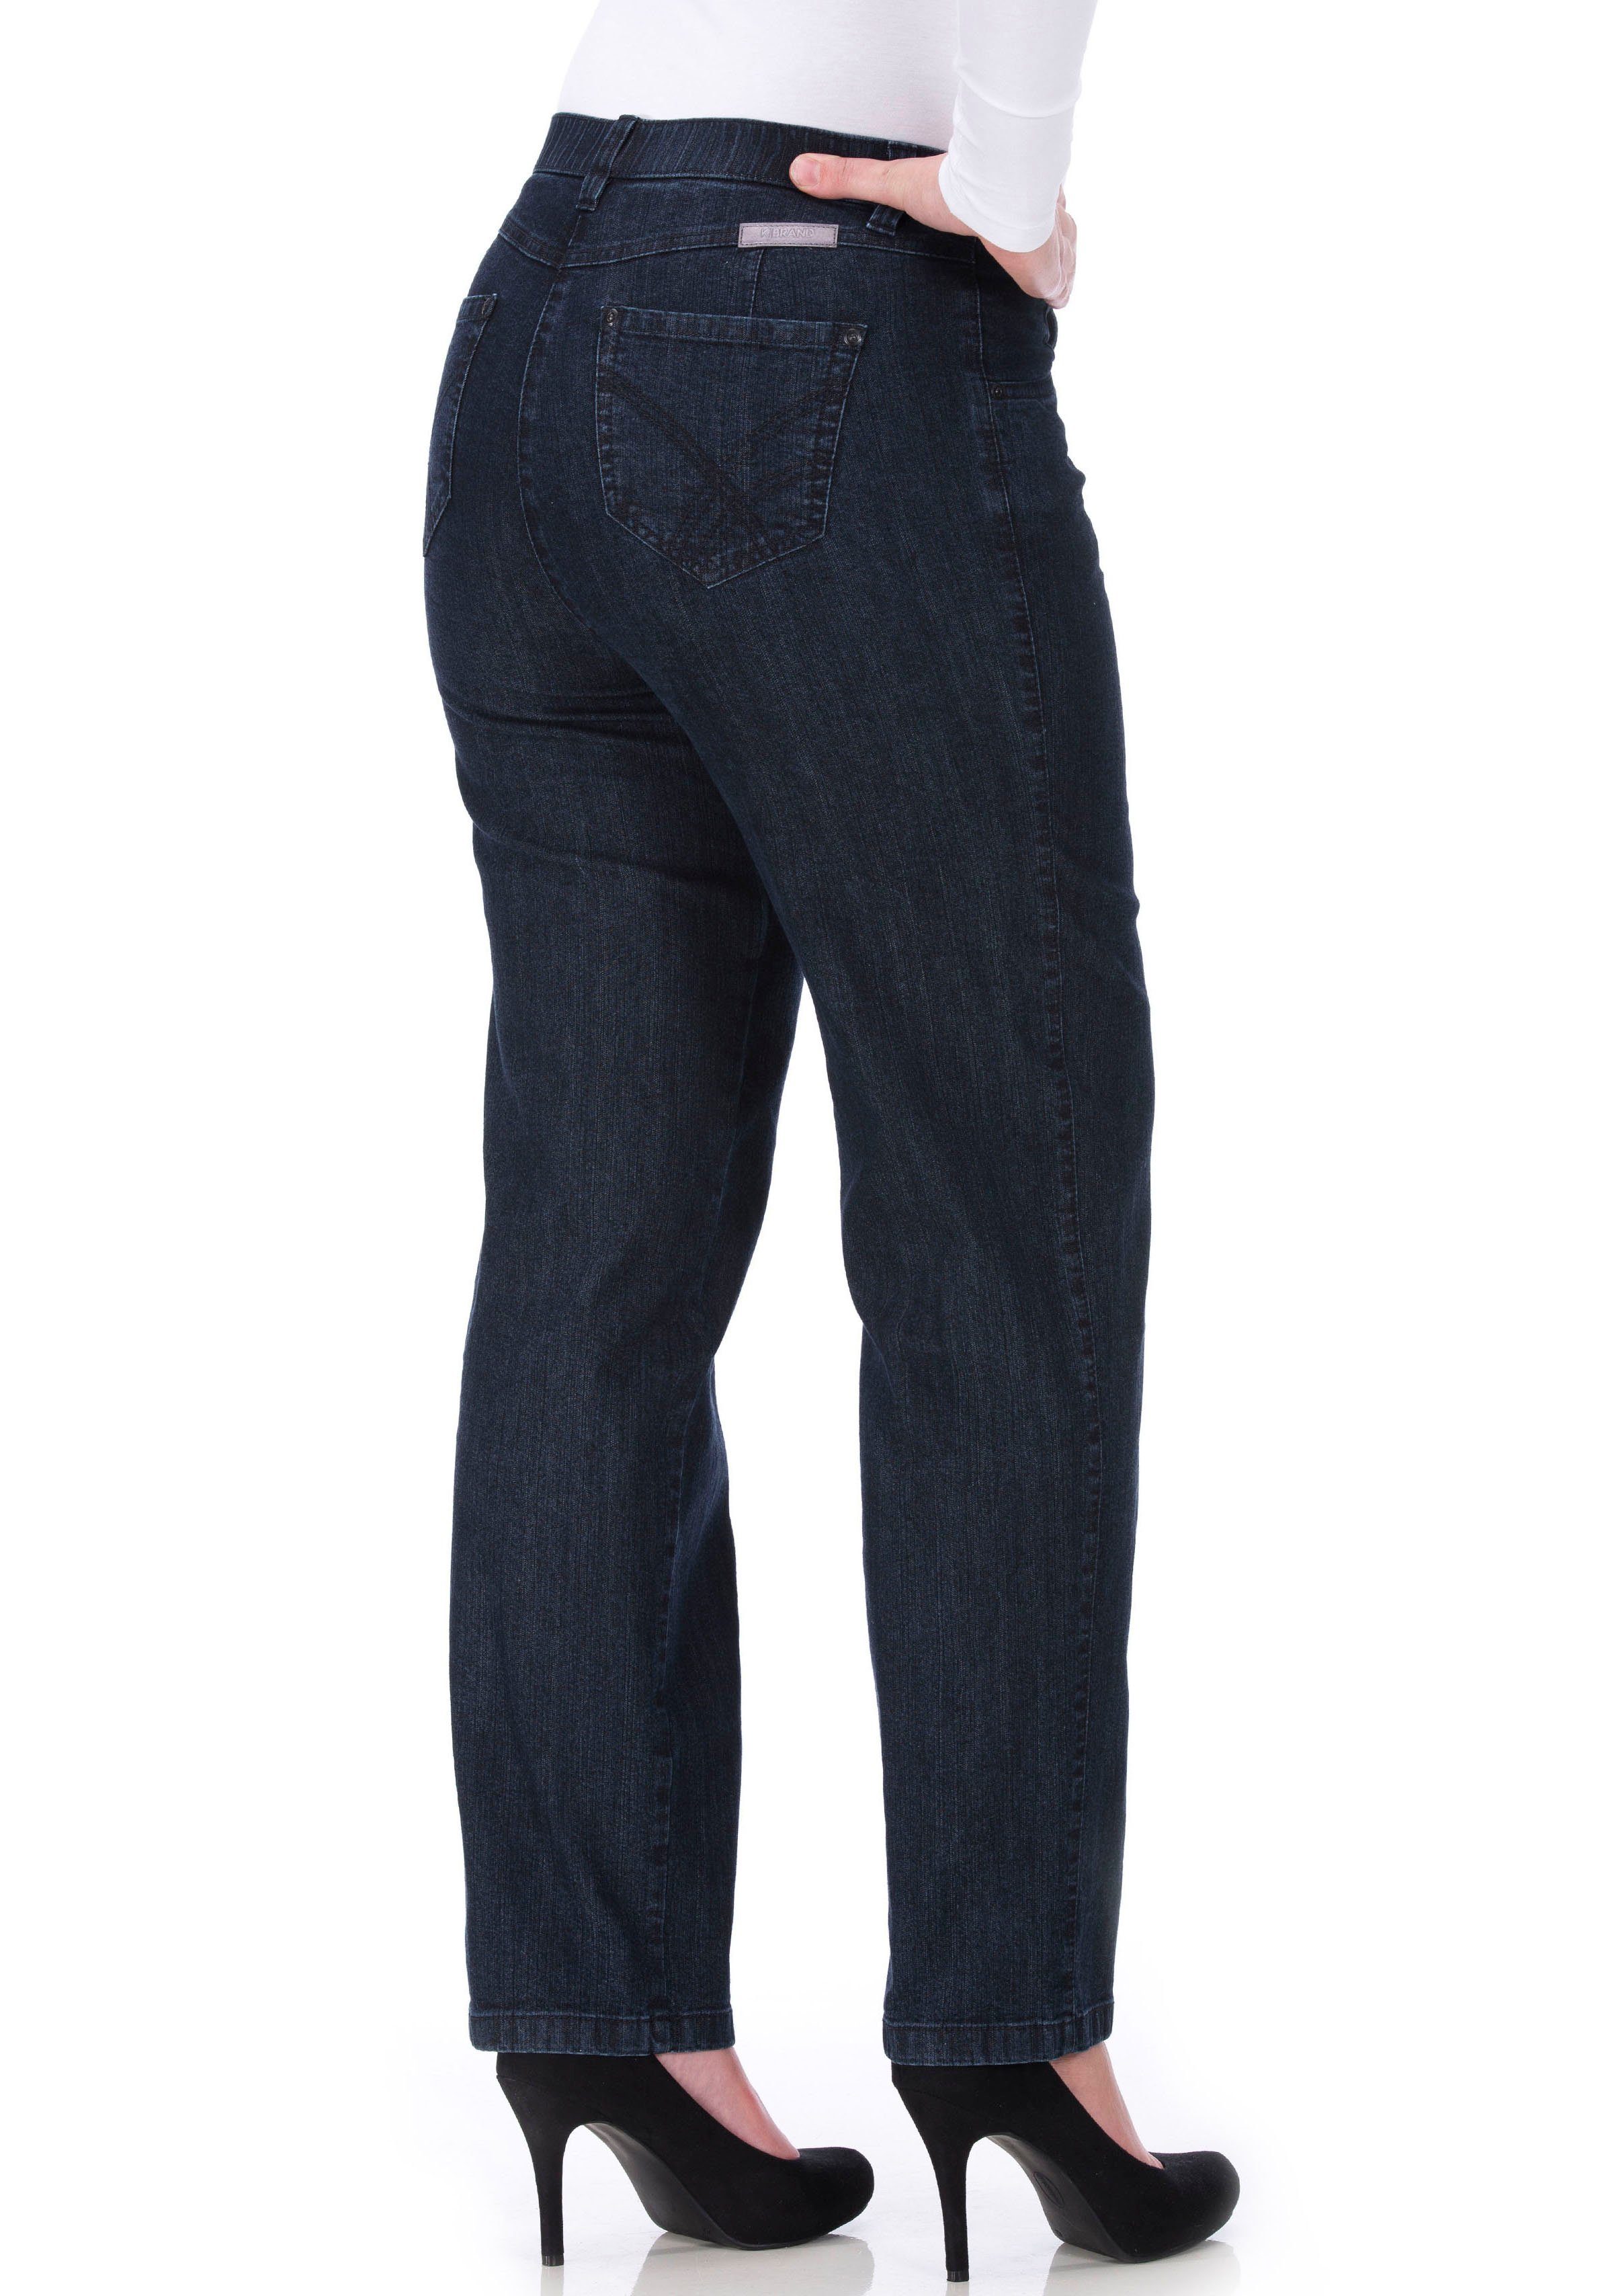 Denim Stretch KjBRAND dark-blue Stretch-Jeans mit Babsie Stretch-Anteil